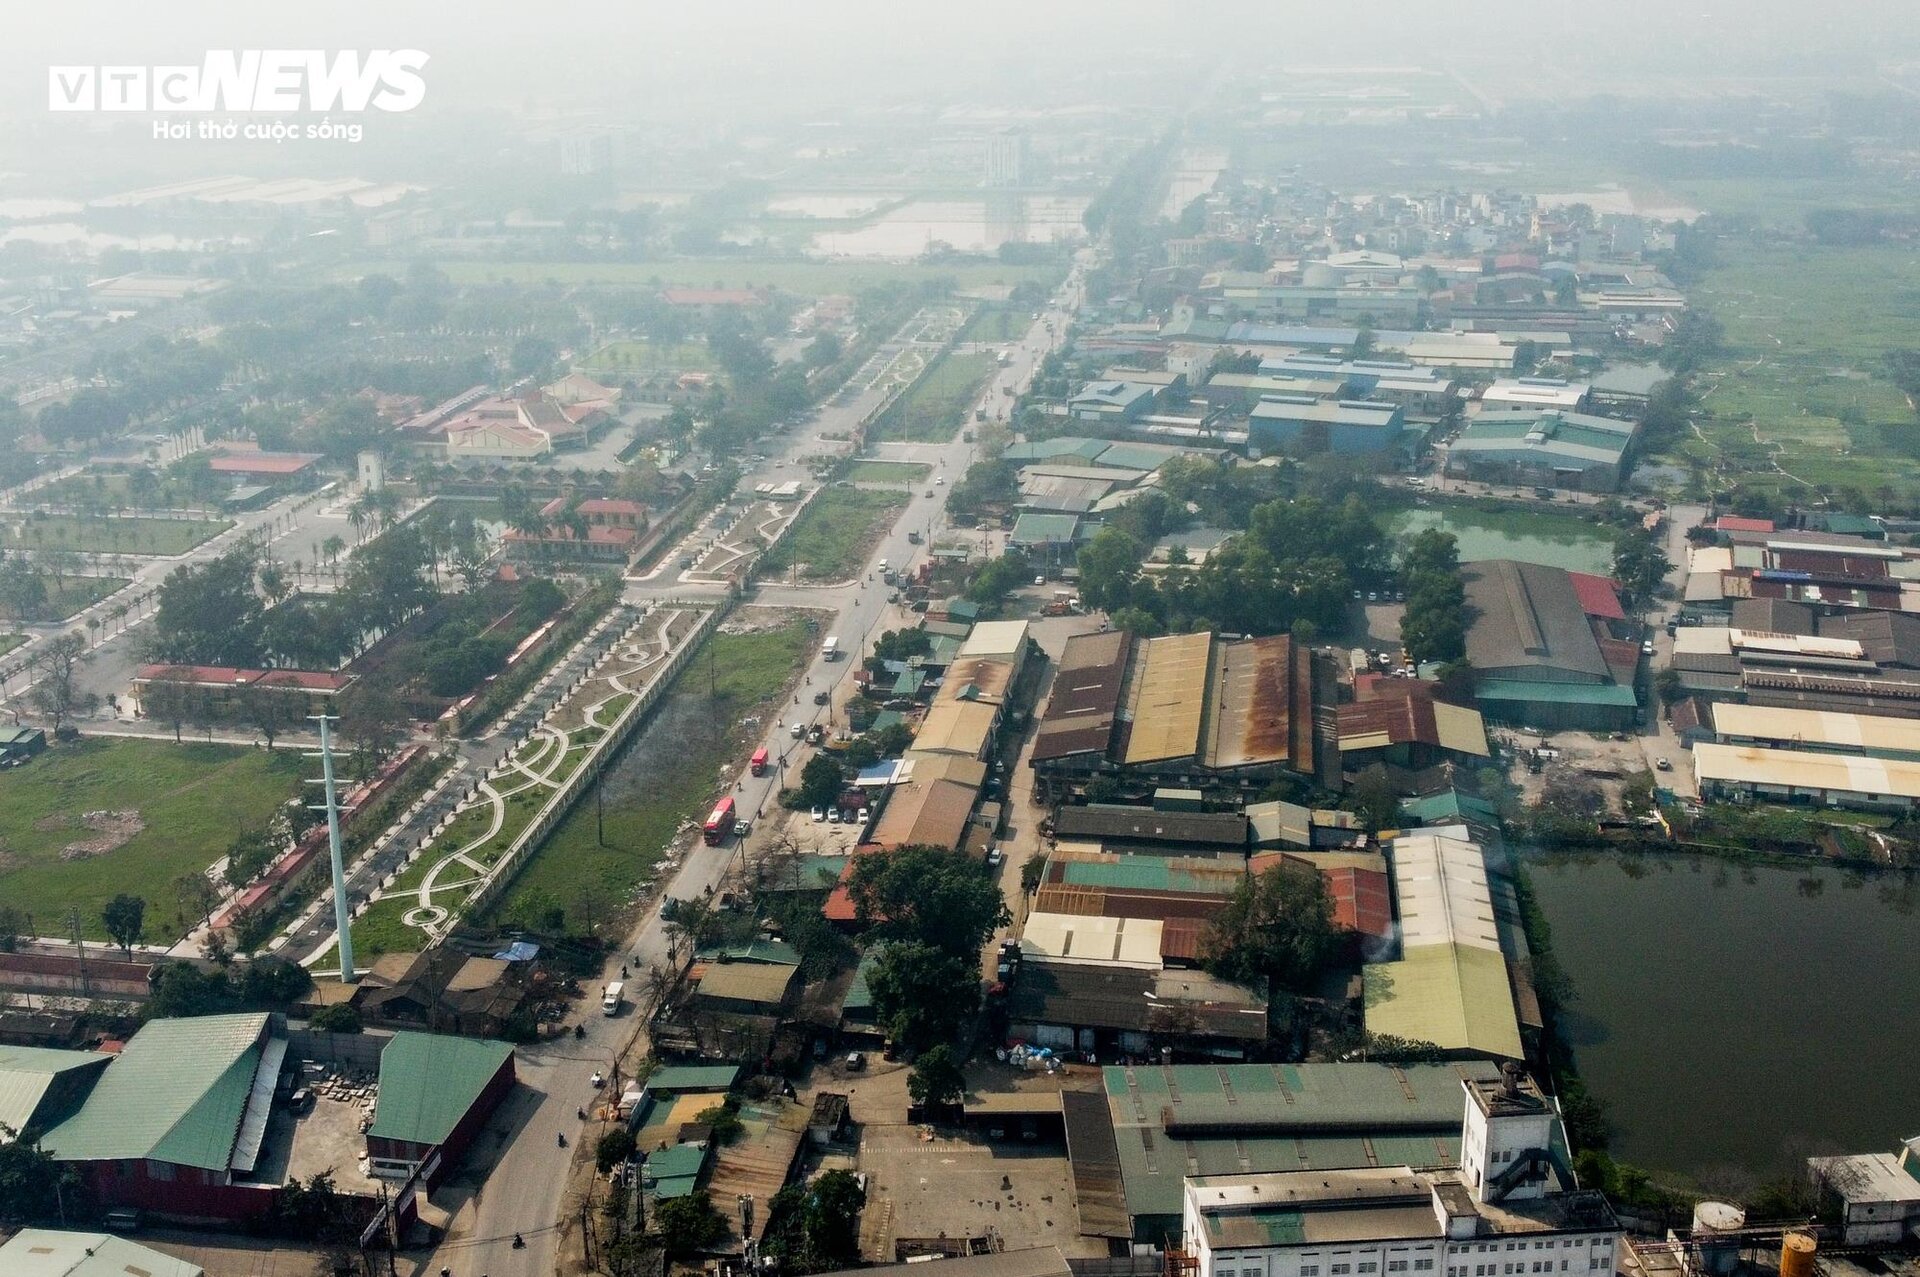 Cận cảnh tuyến đường ở Hà Nội sắp được đầu tư 2.800 tỷ đồng để mở rộng- Ảnh 1.